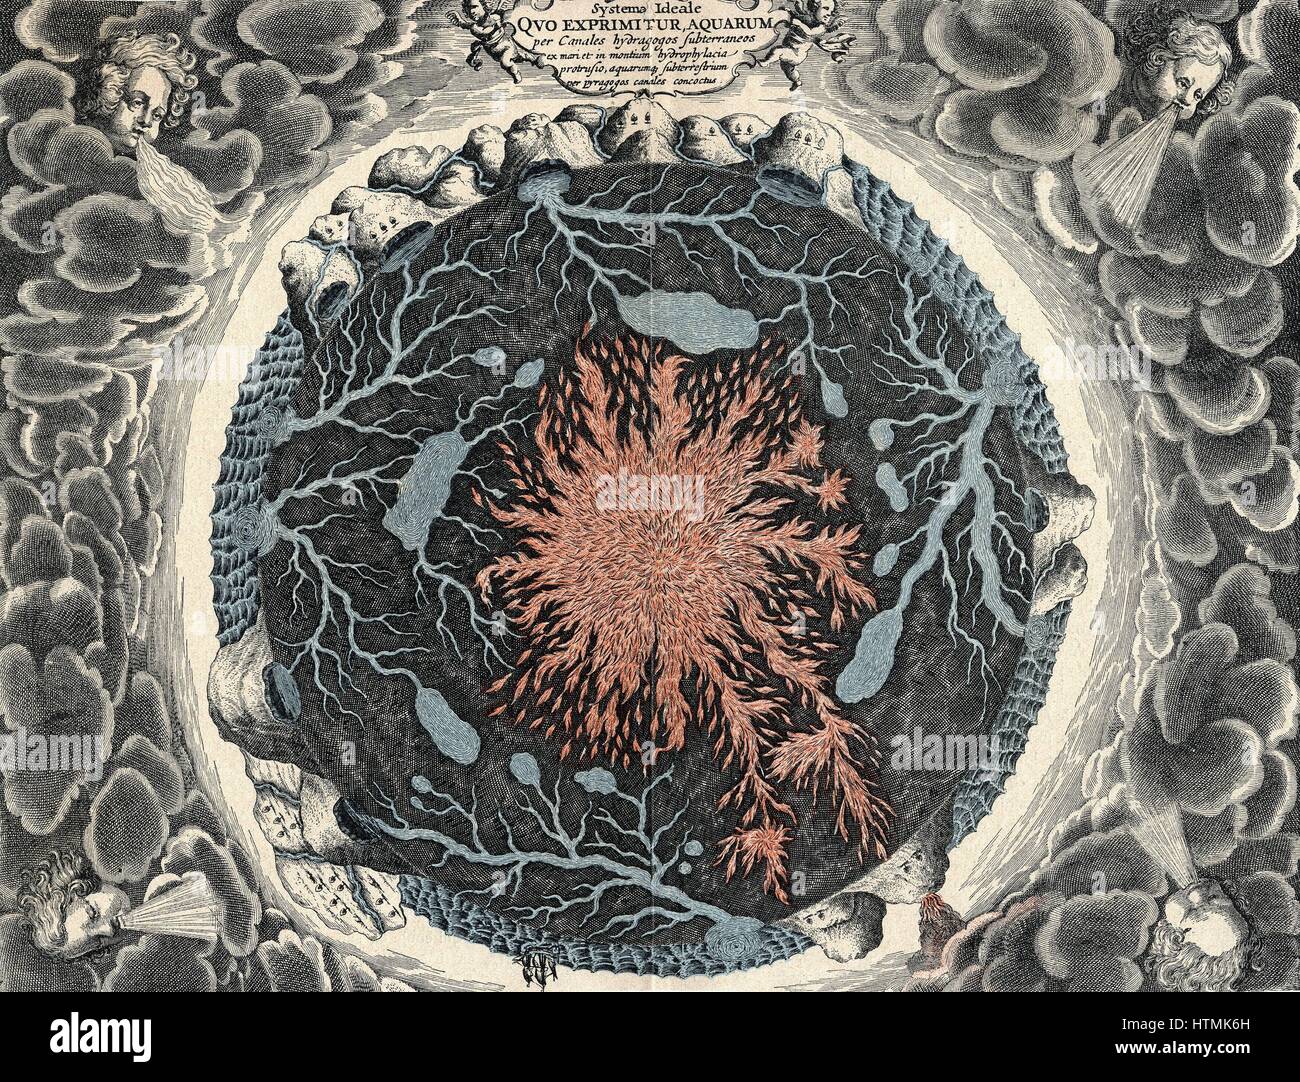 Vue en coupe transversale de la Terre, montrant feu central et canaux souterrains liés aux océans. D'Athanasius Kircher 'Mundus Subterraneous', 1665 Banque D'Images